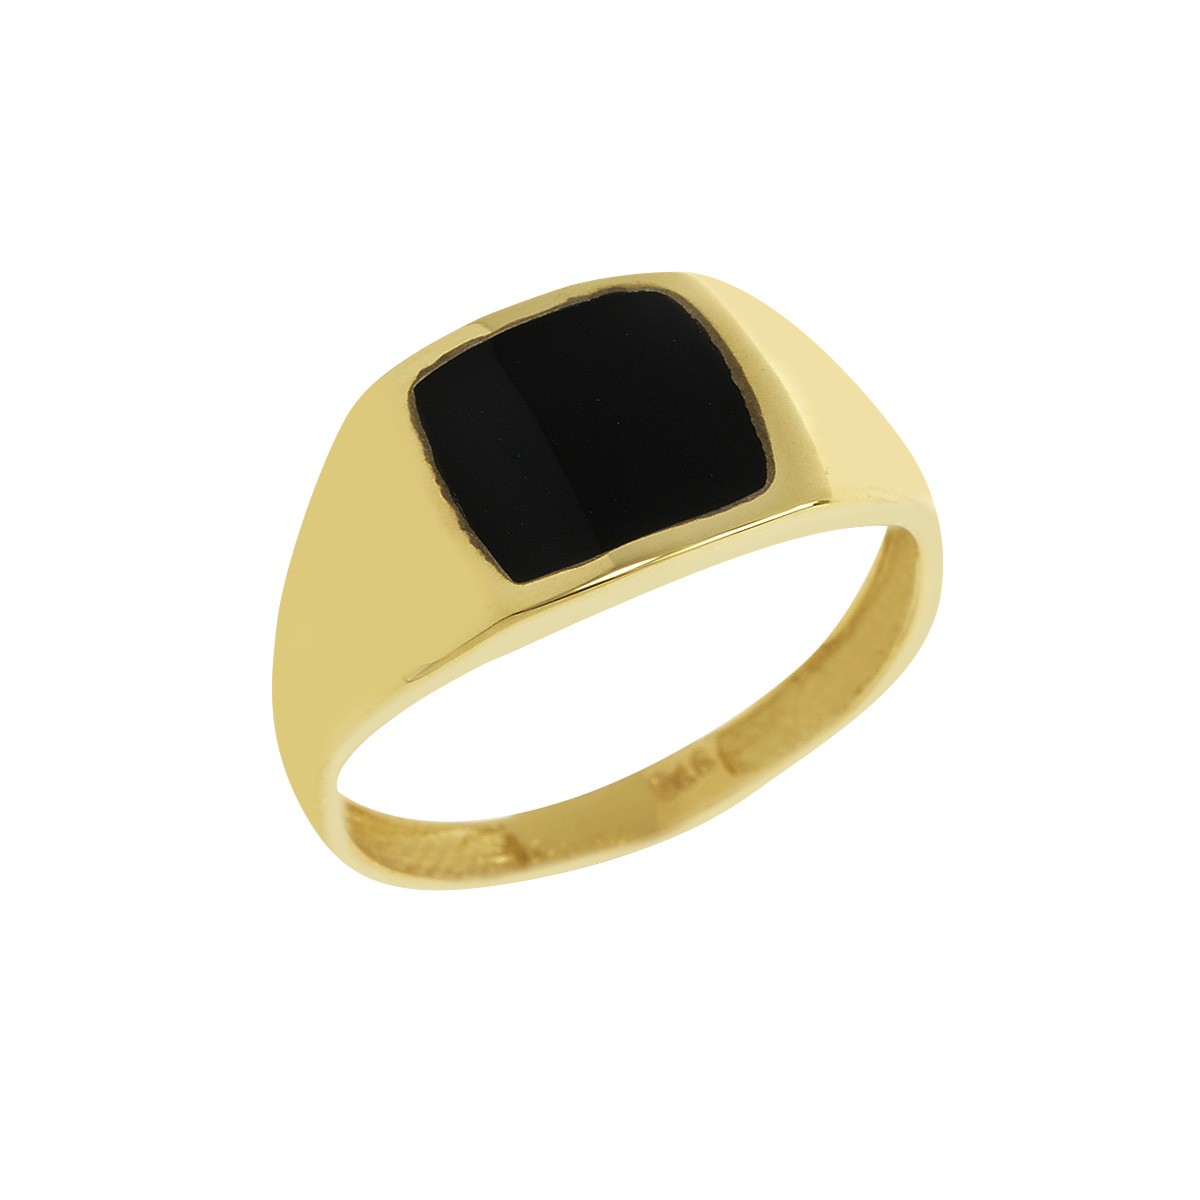 Δακτυλίδι Ανδρικό Χρυσό Κ9 με Πλάκα Κωδ: 401154